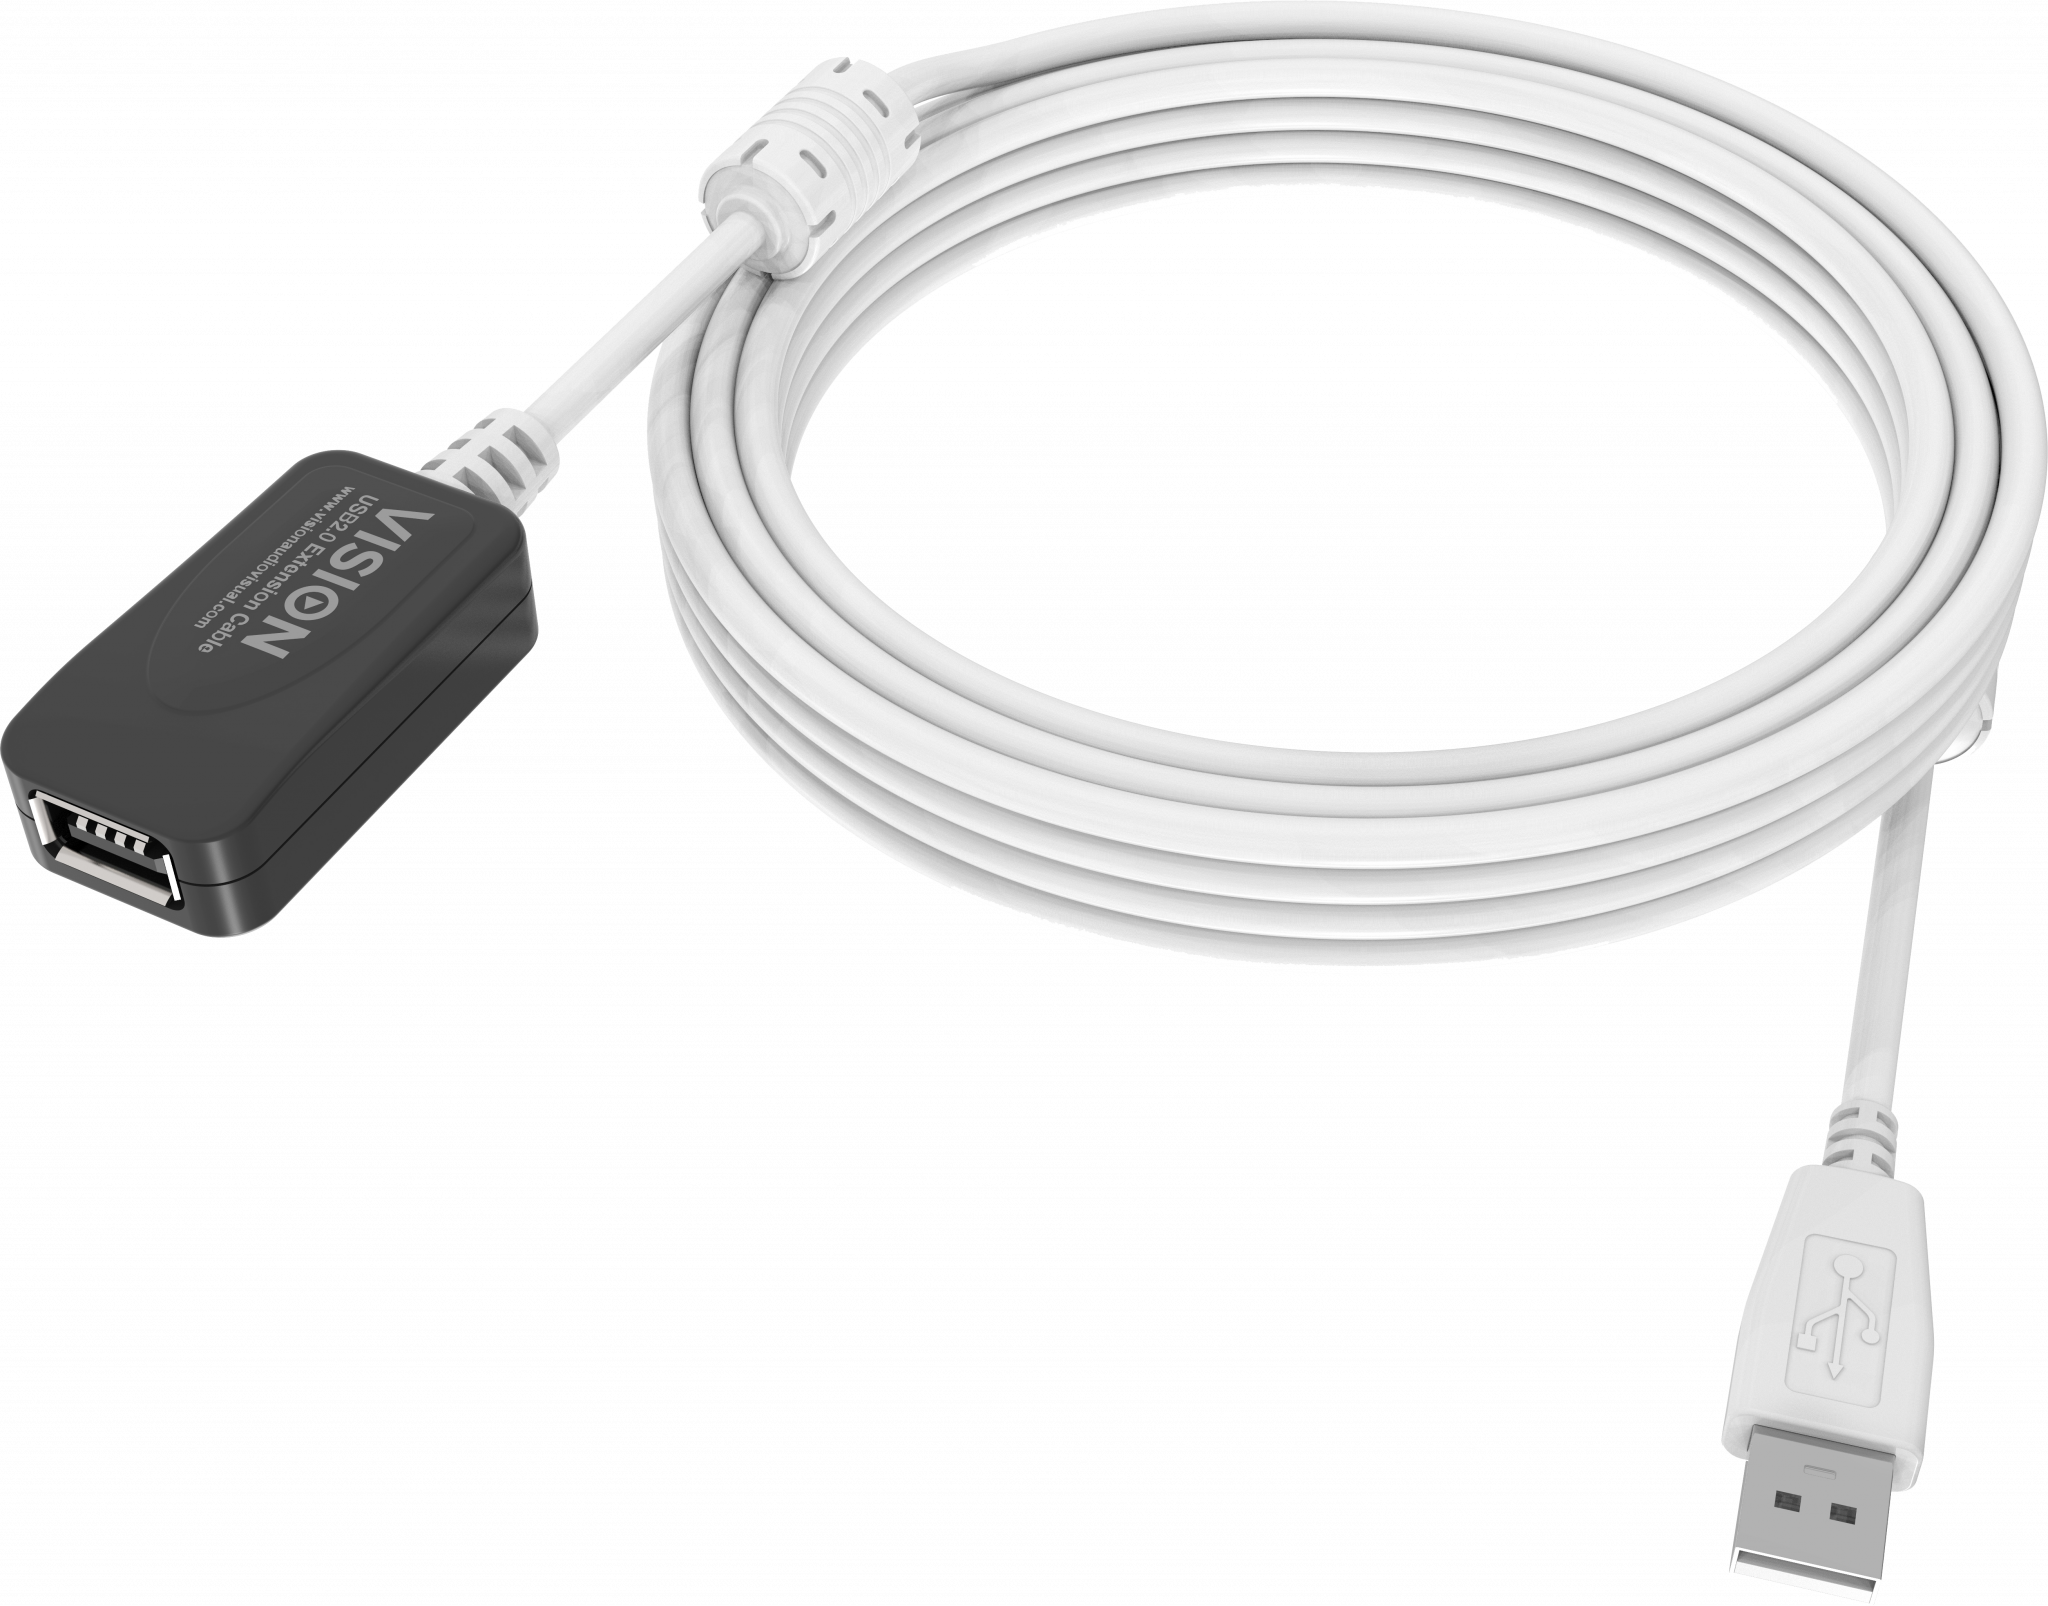 An image showing Cavo di prolunga USB 2.0 bianco da 5 m (16 piedi) con booster attivo